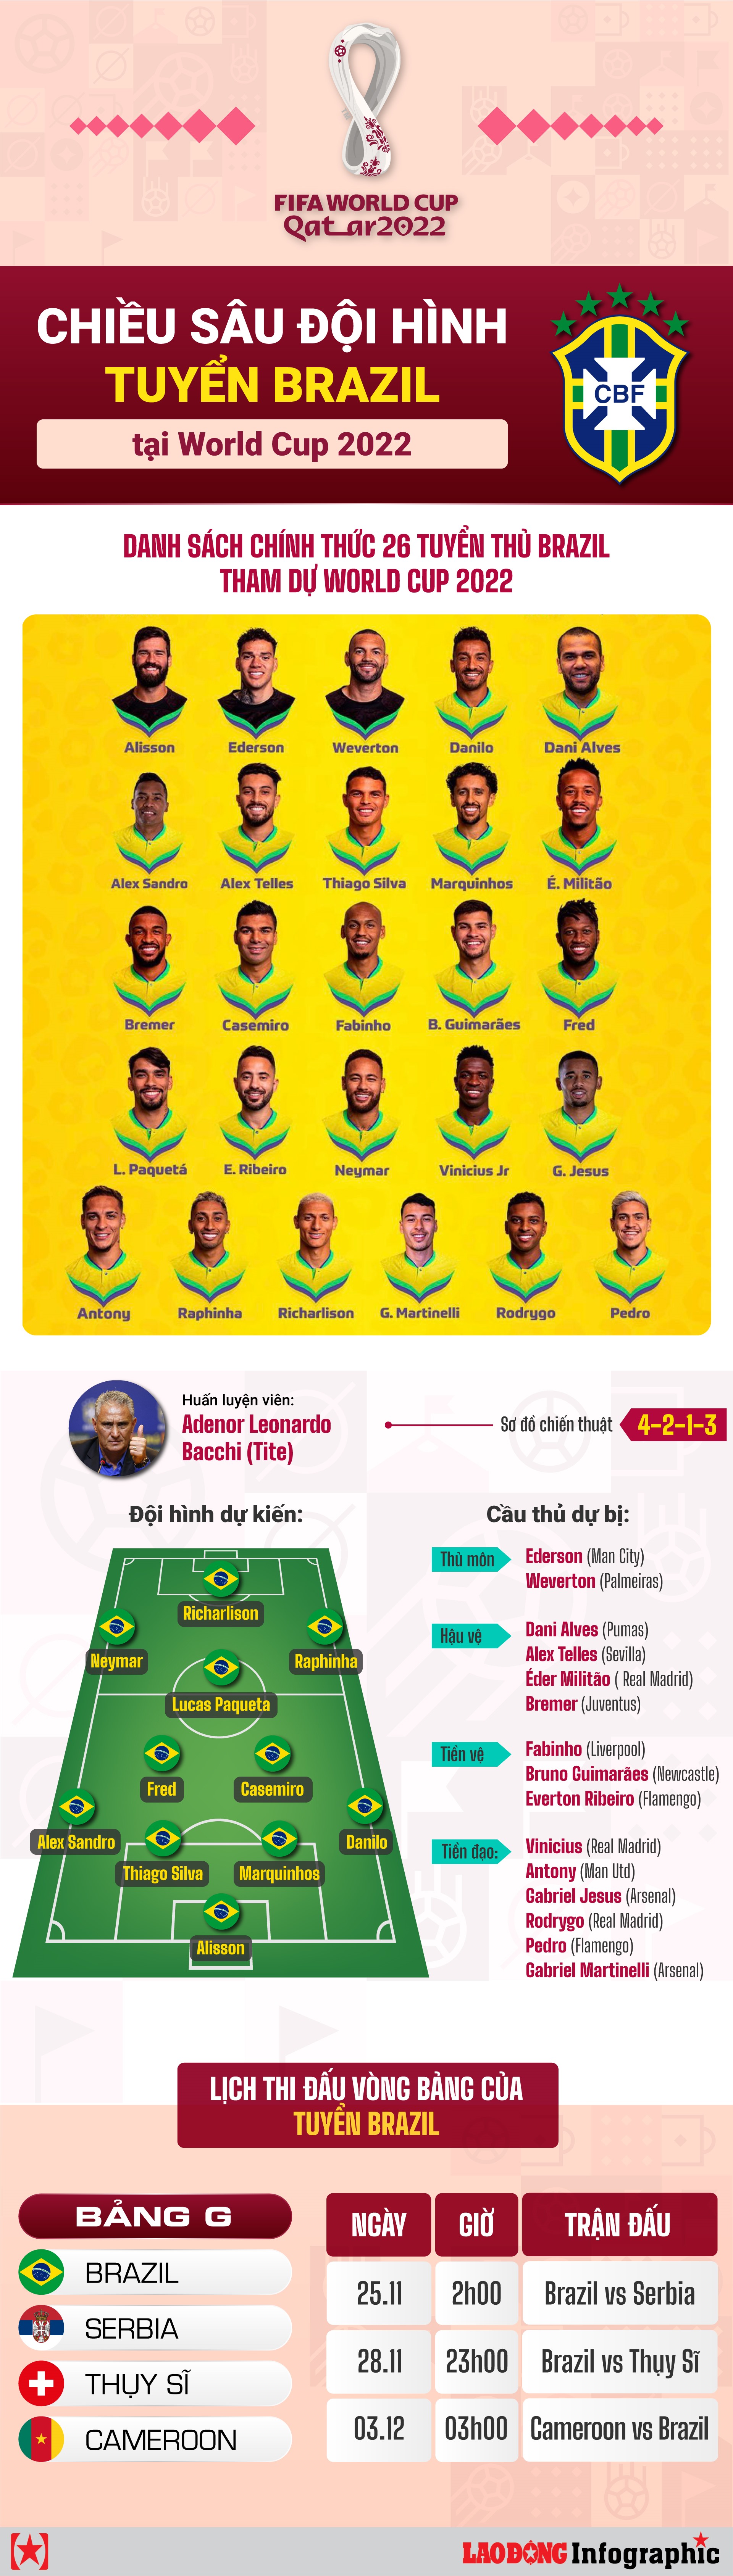 Chiều sâu đội hình toàn sao của tuyển Brazil tại World Cup 2022